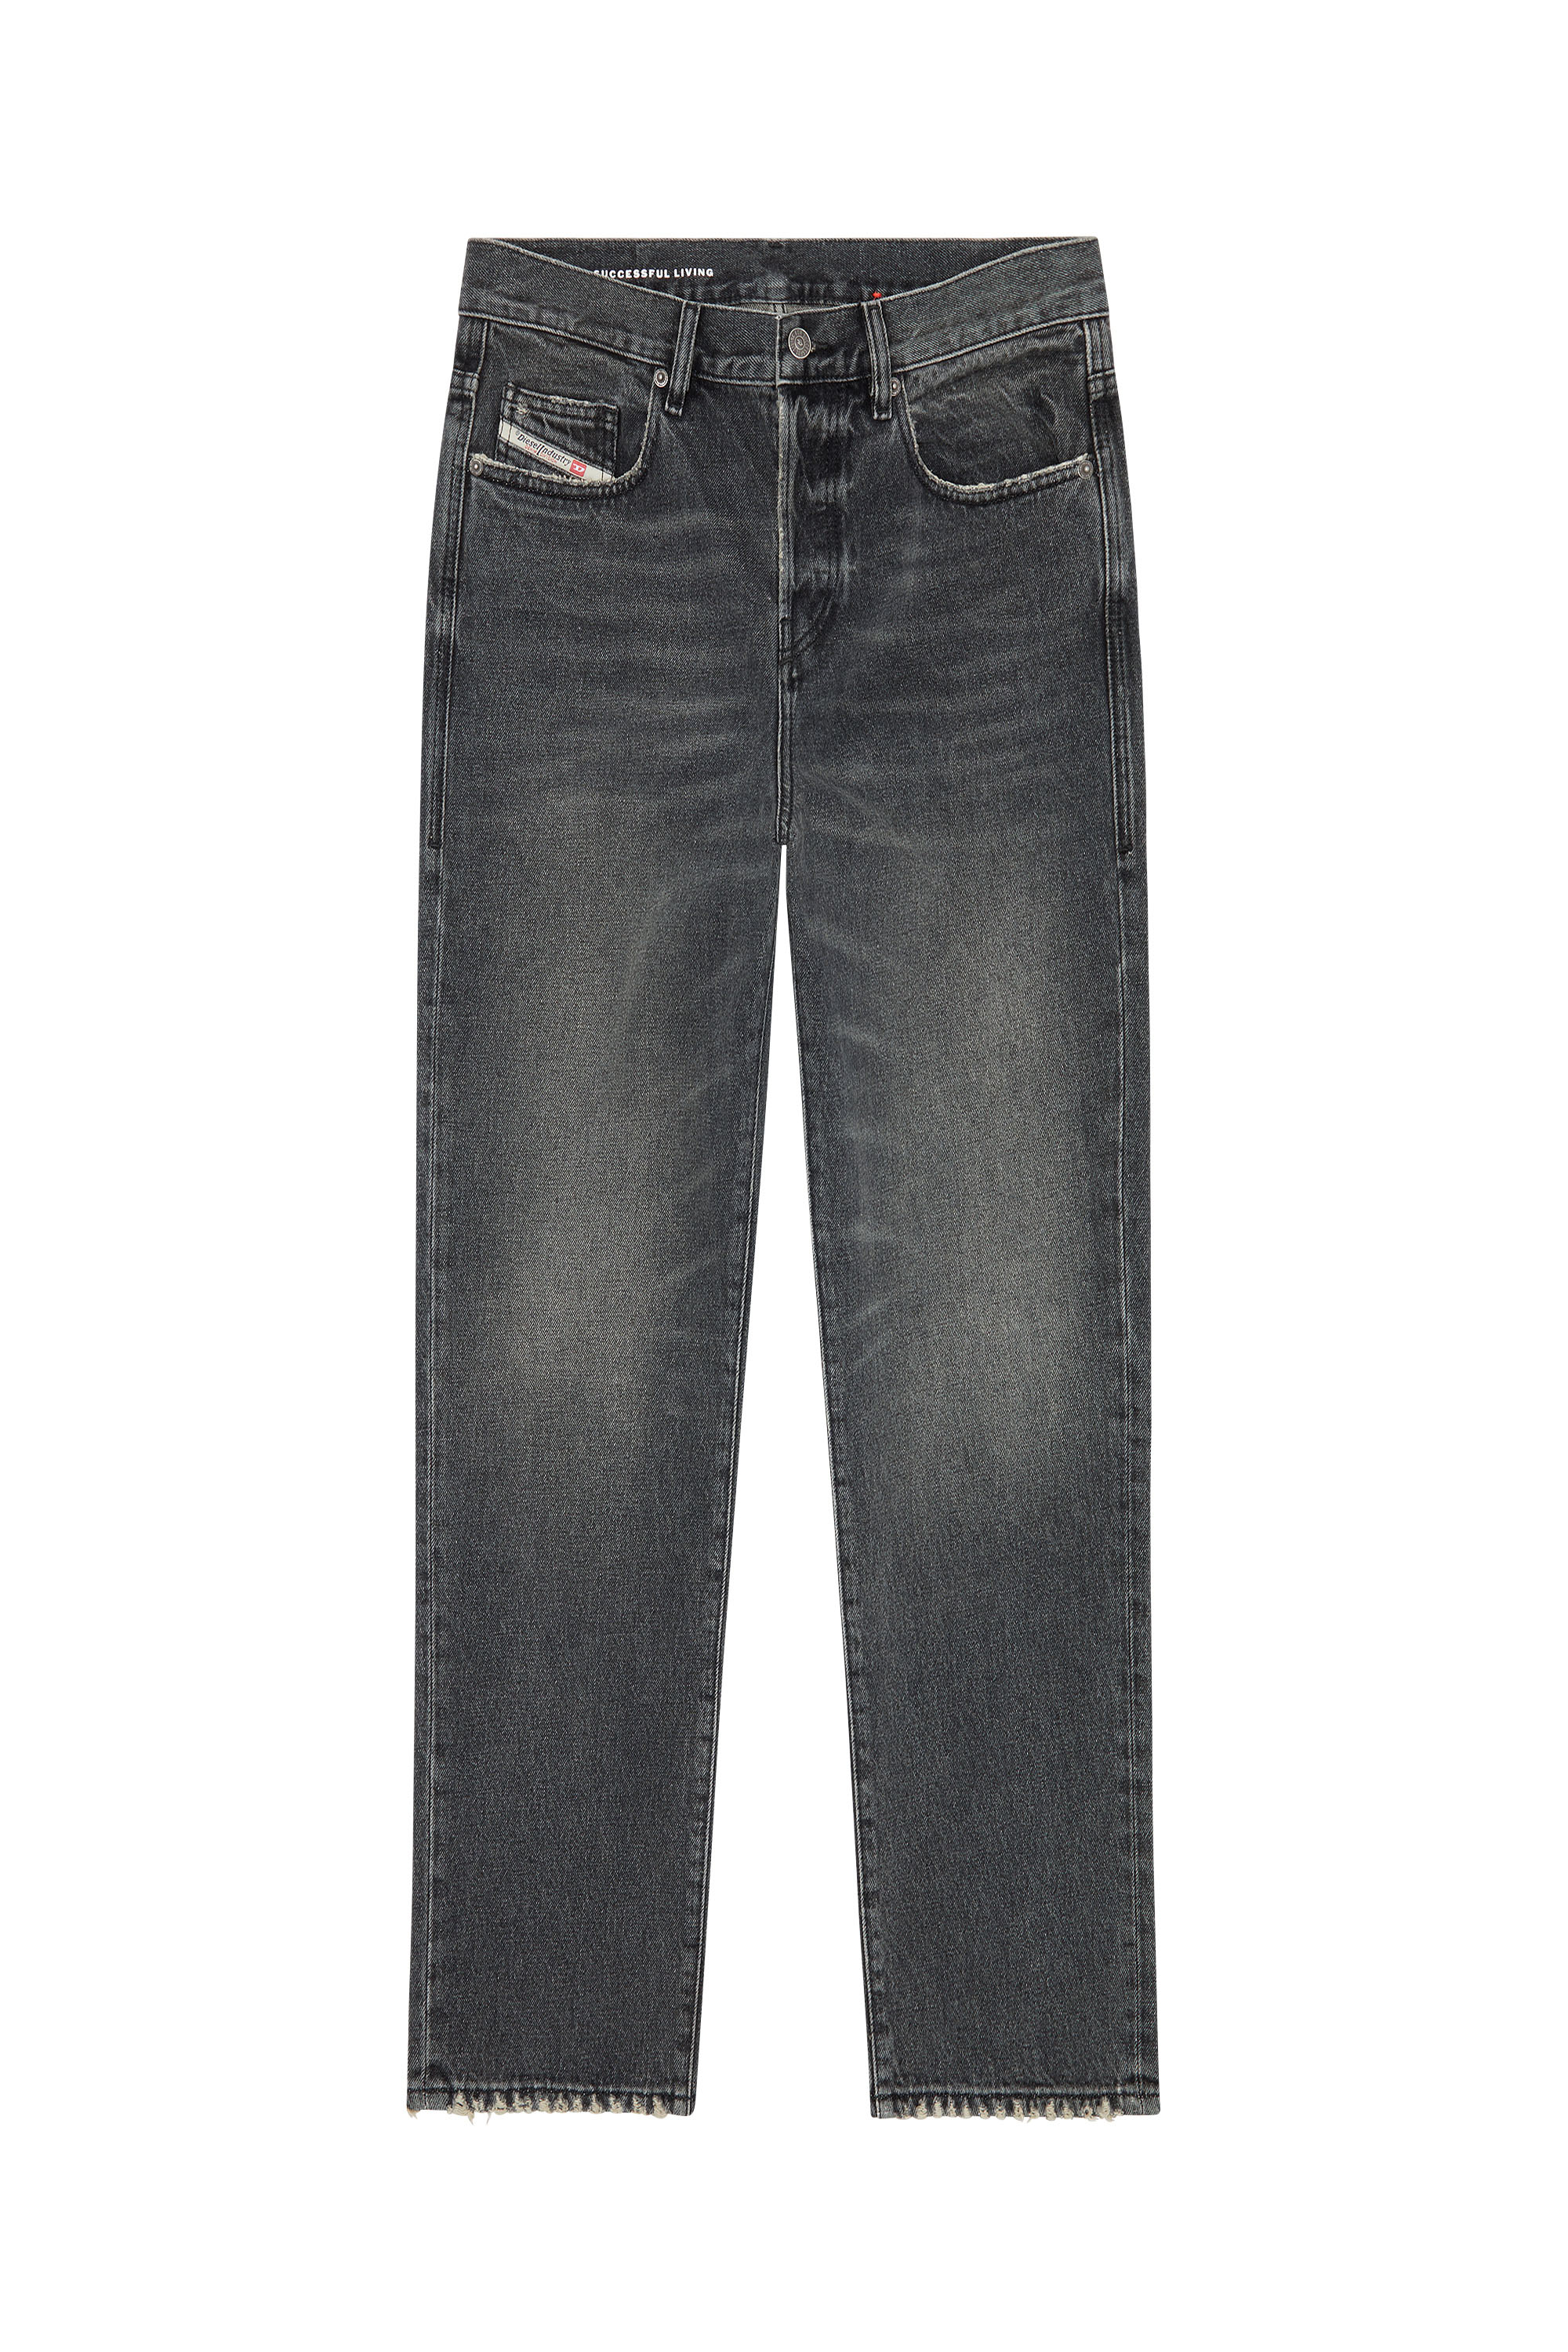 Diesel - Straight Jeans 2020 D-Viker 007K8,  - Image 6